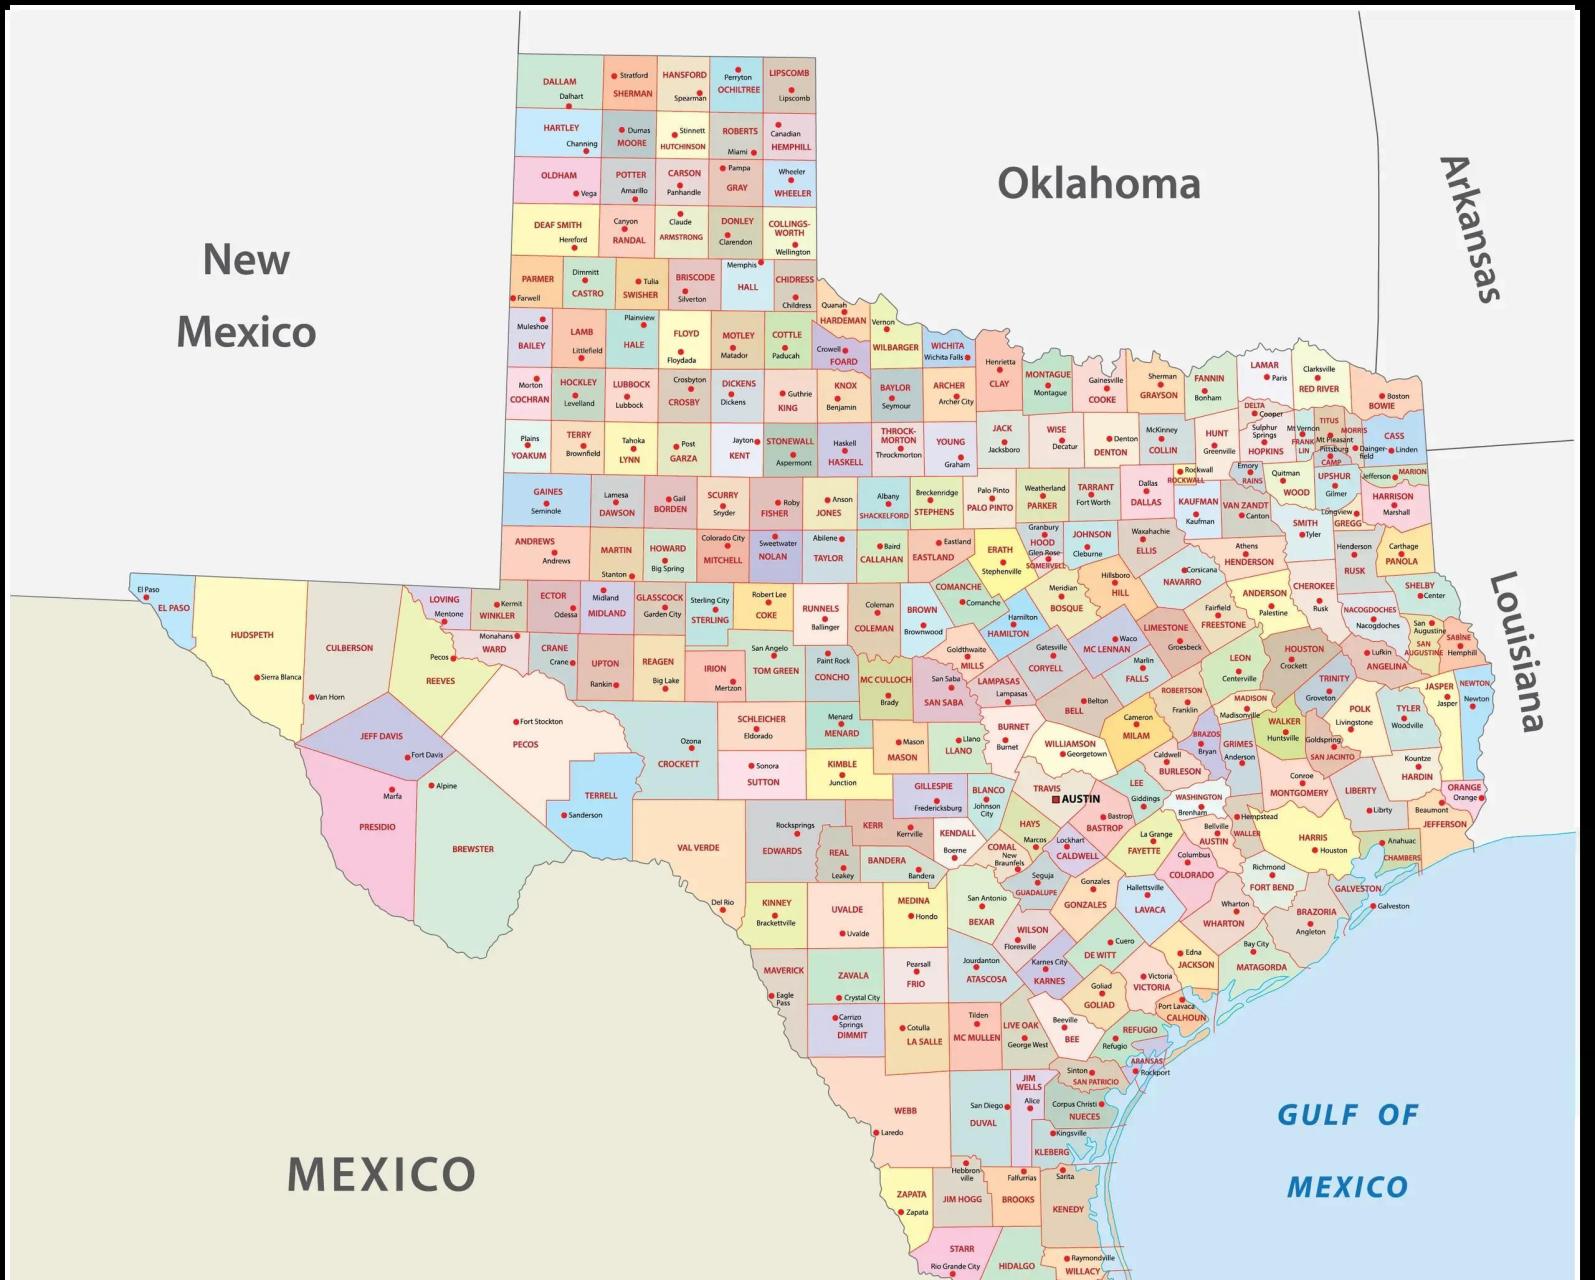 美国德克萨斯州位置图片